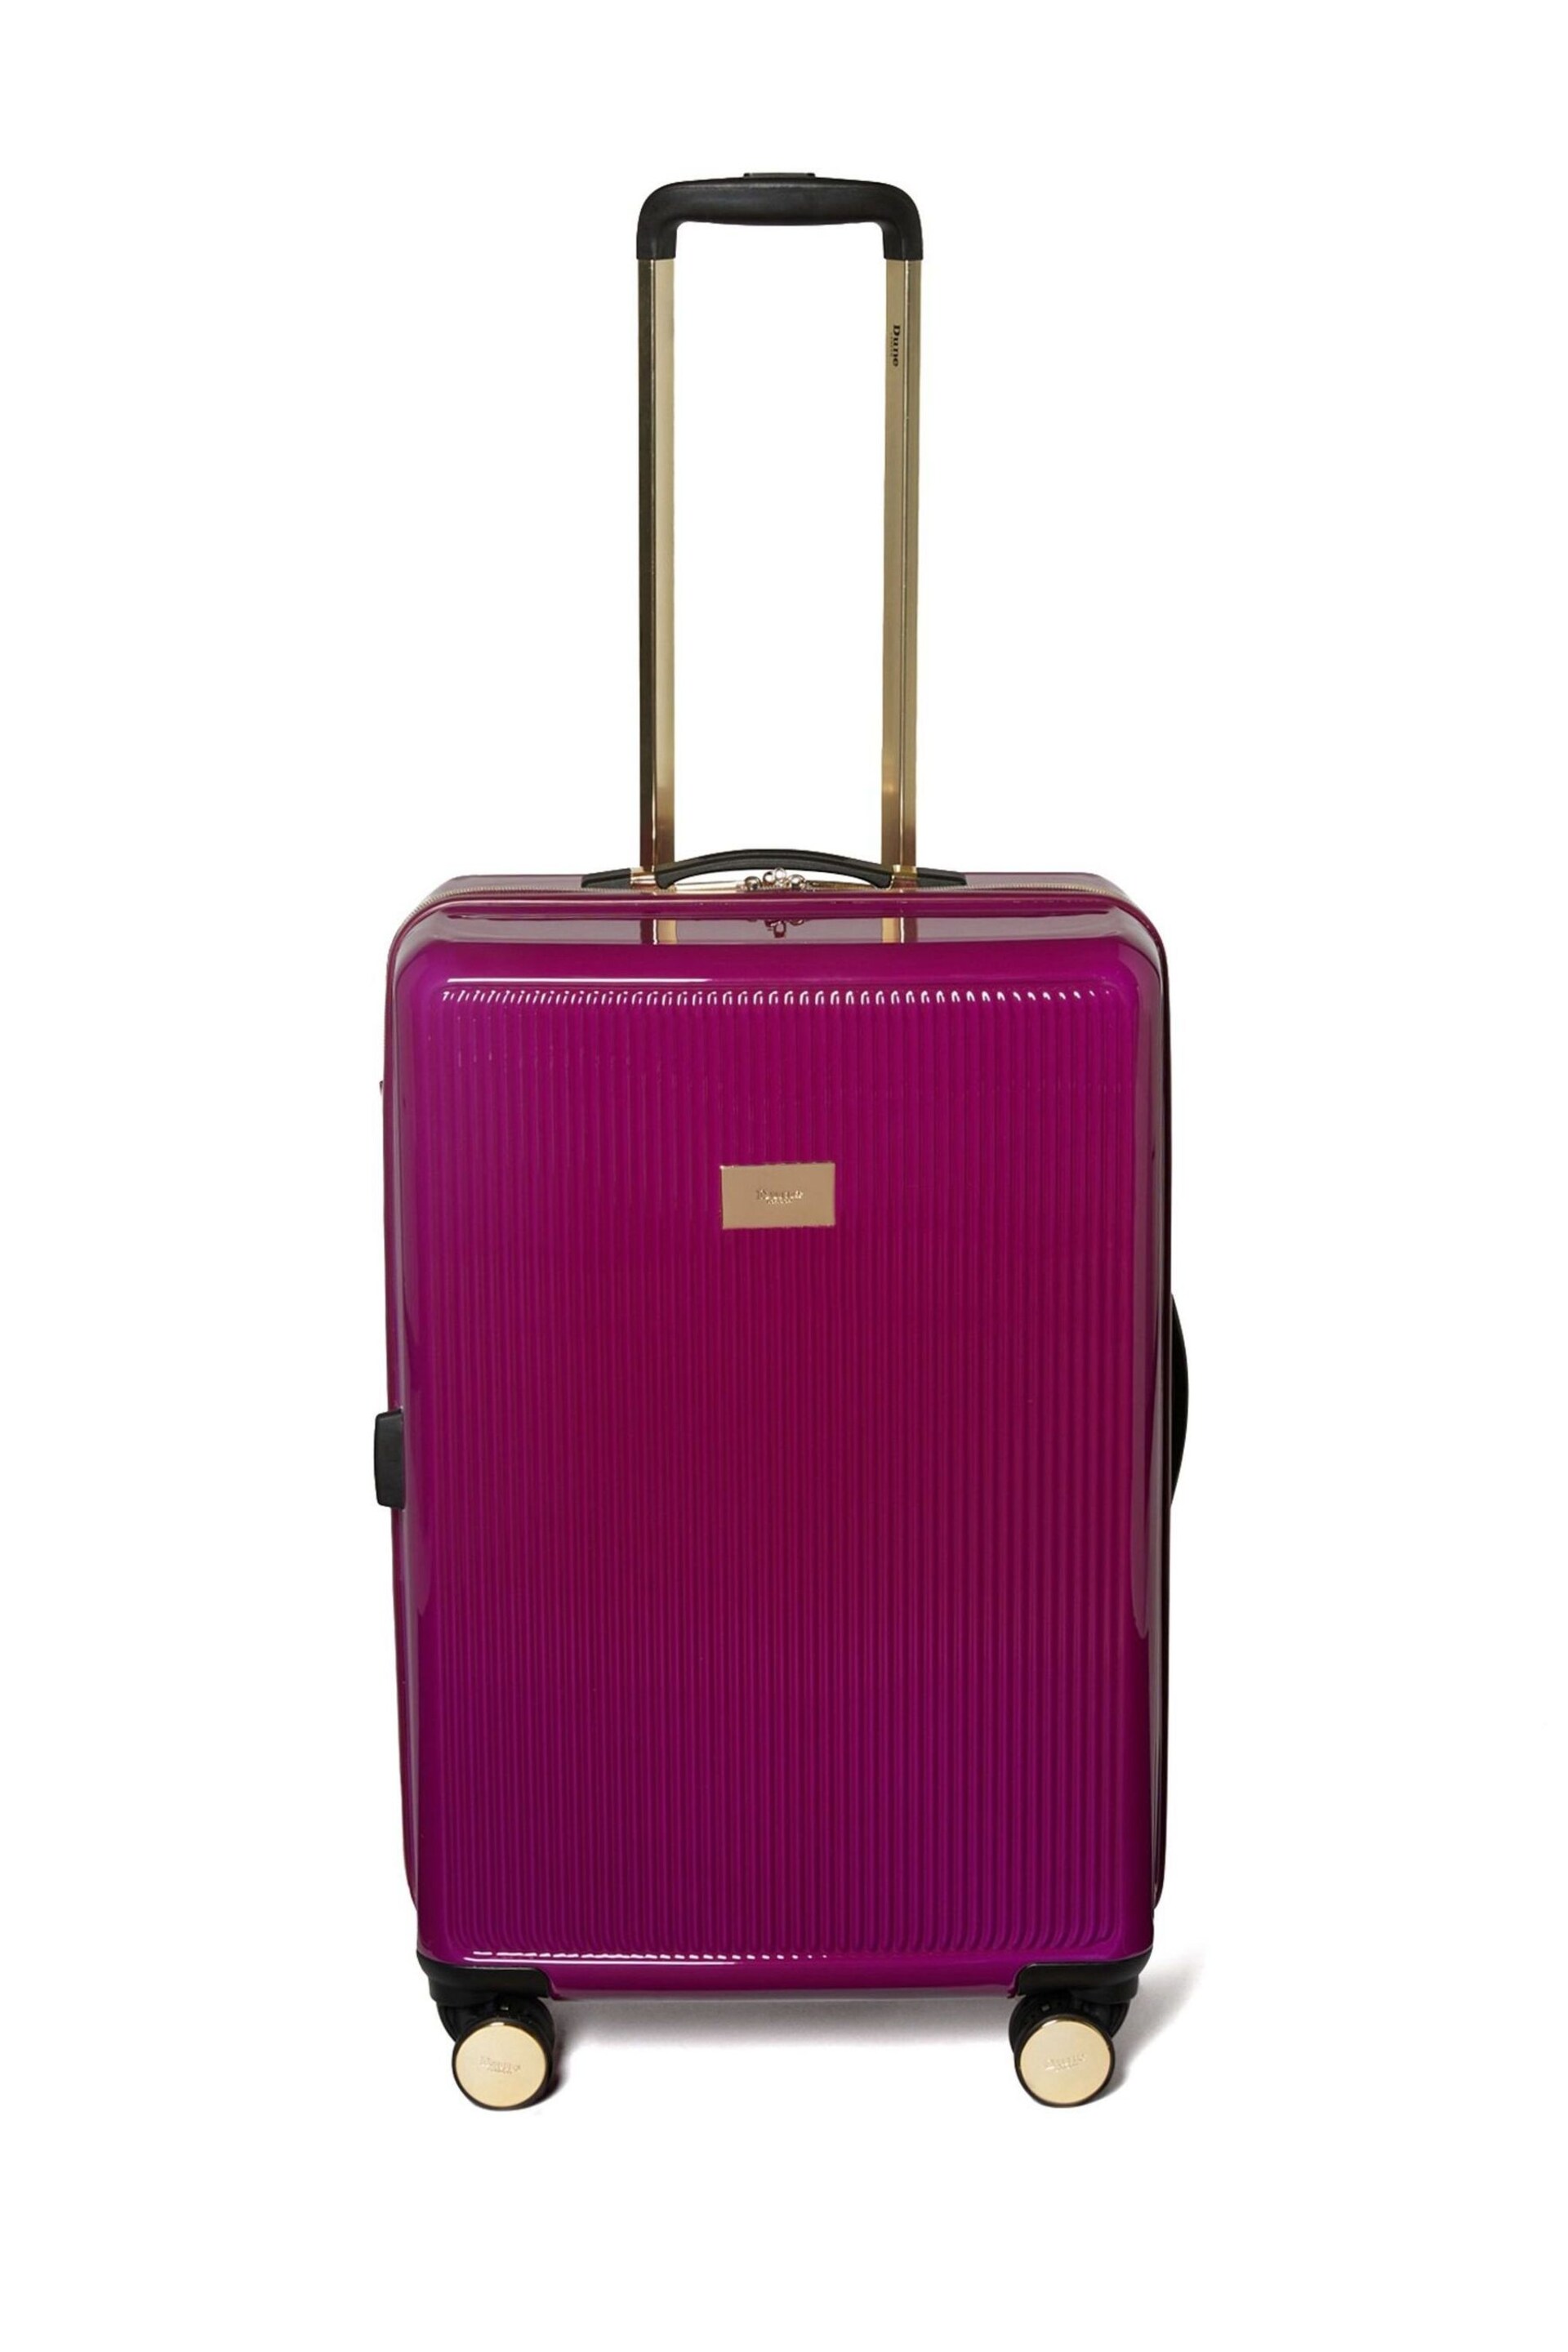 Dune London Pink Olive 67cm Medium Suitcase - Image 1 of 3